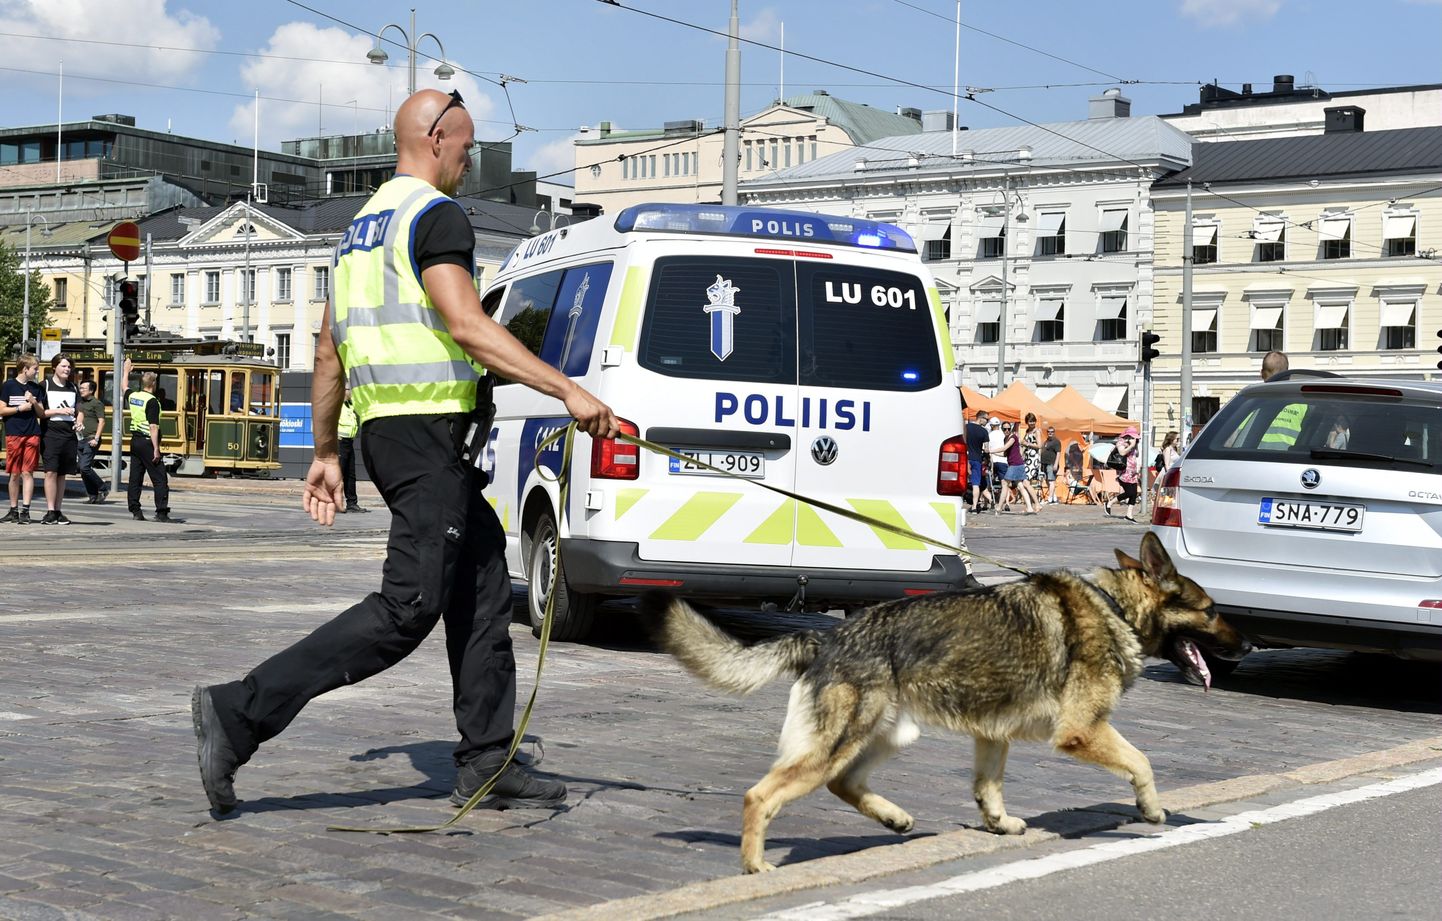 Soome politseinik patrullib koeraga Helsingis. Foto pole kõnealuse juhtumiga seotud.